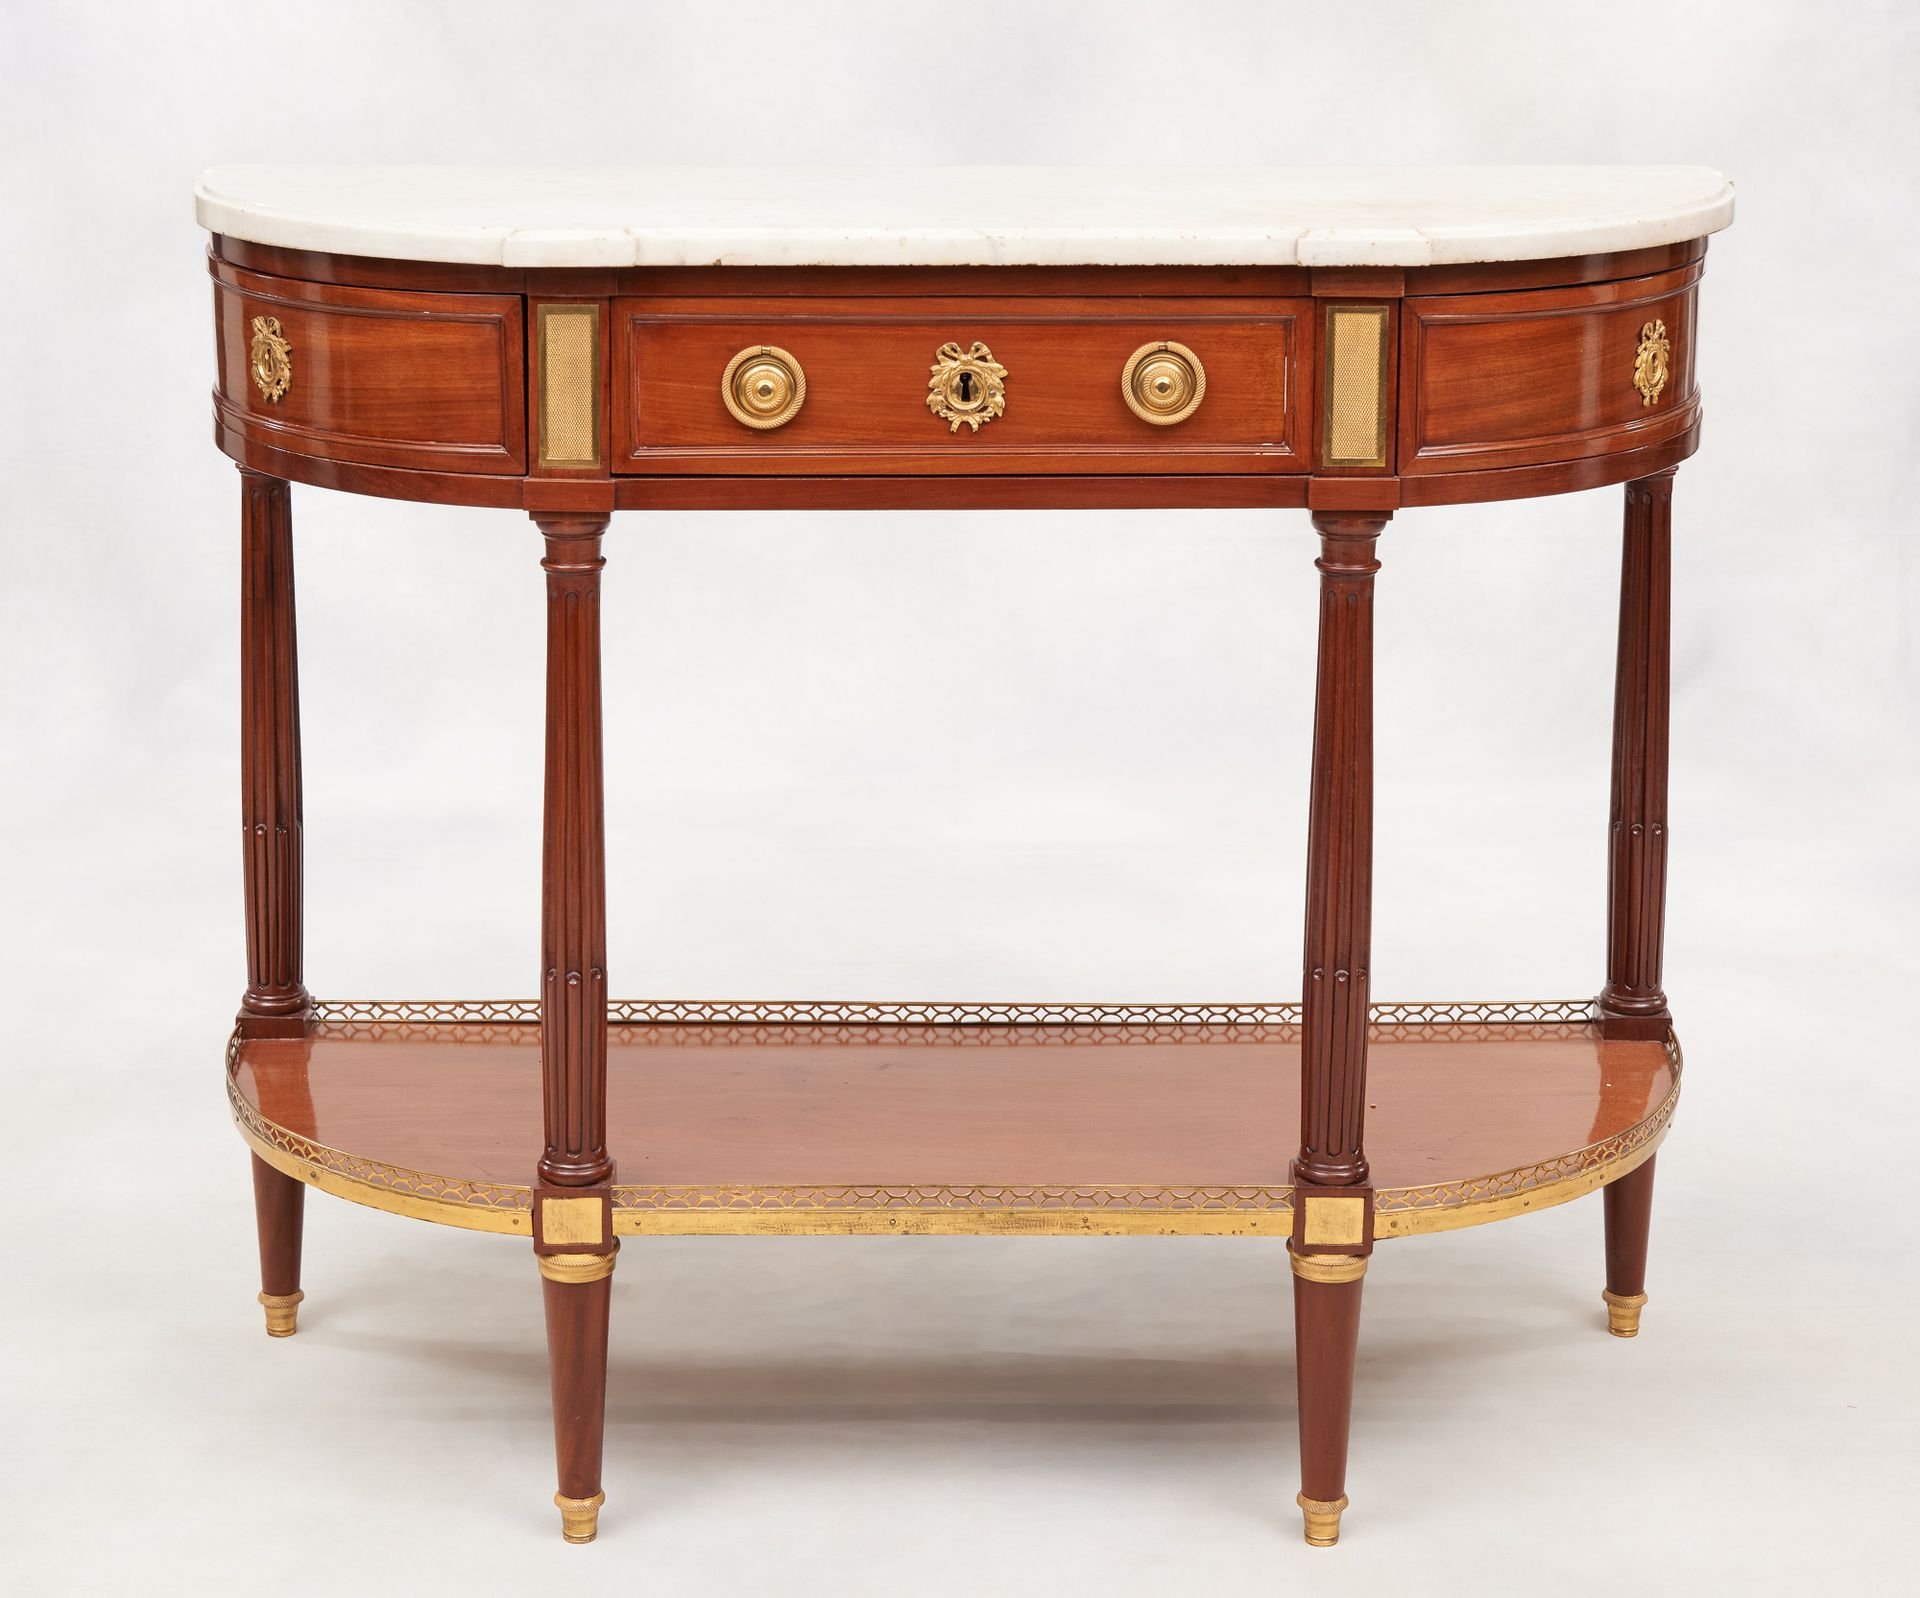 D'époque Louis XVI. 家具：桃花心木半月形控制台，腰部有一个抽屉，搁置在有凹槽的腿上，有交错的架子，镀金的青铜亮点，上面有白色大理石。

尺寸&hellip;